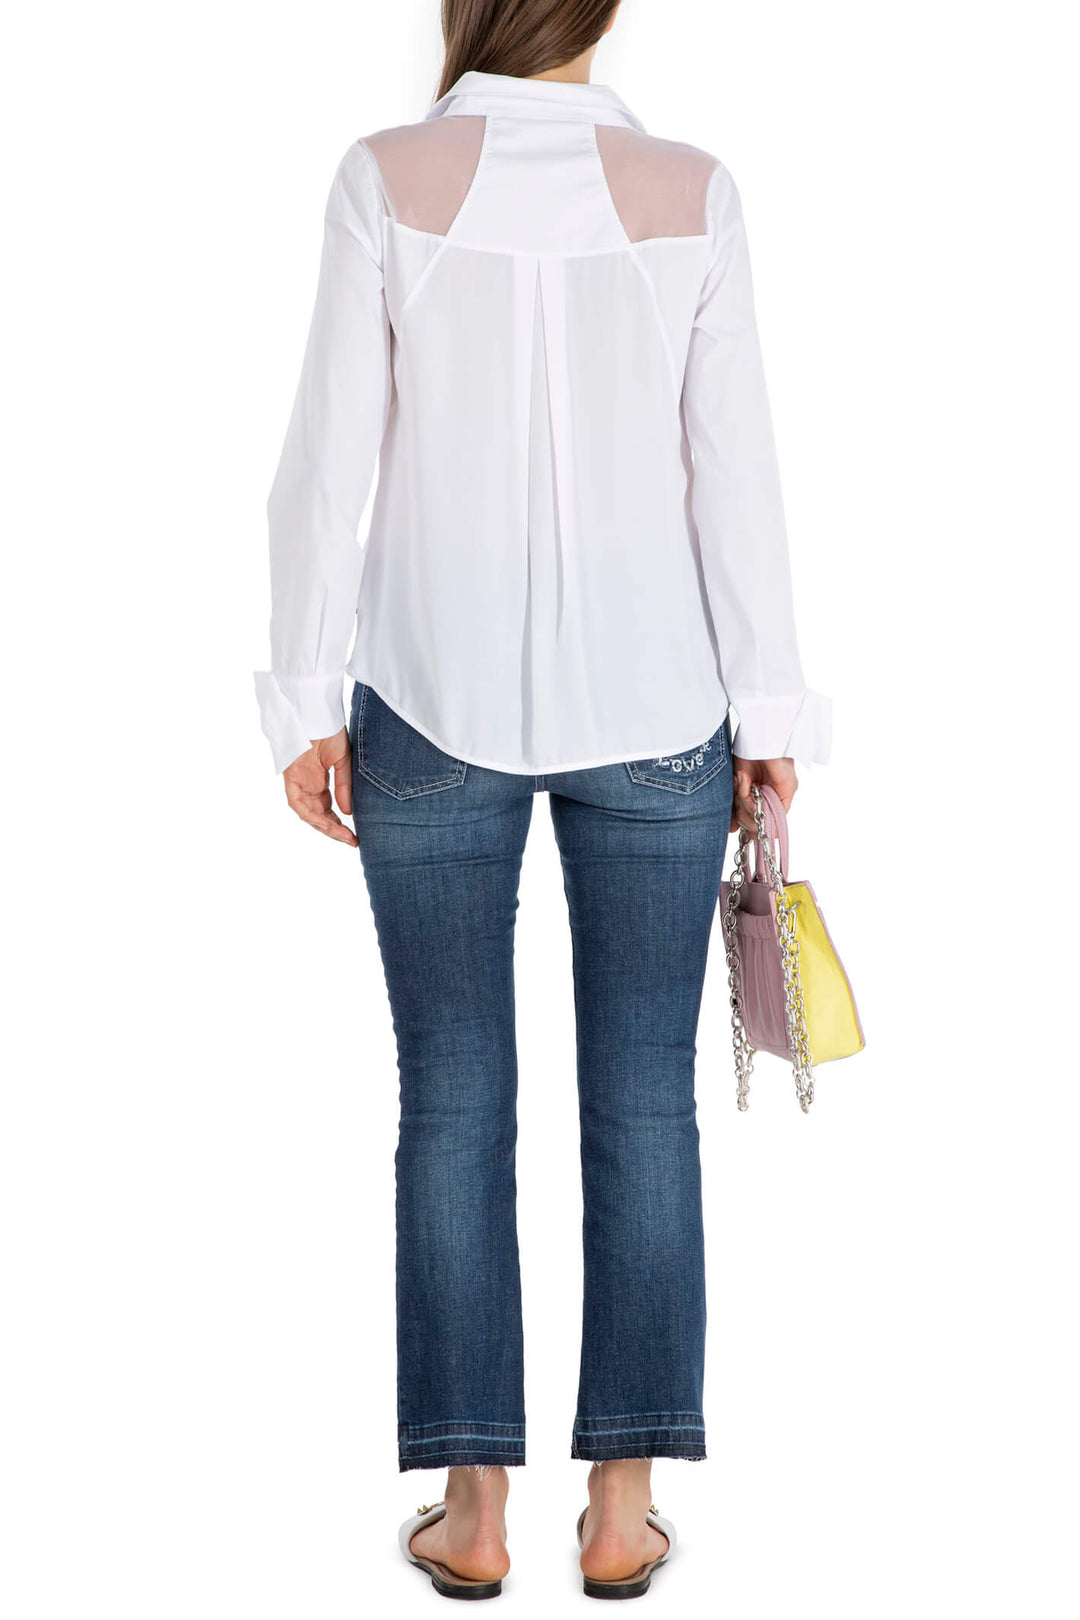 Elisa Cavaletti EJP23102700 White Mesh Shoulder Shirt - Experience Boutique